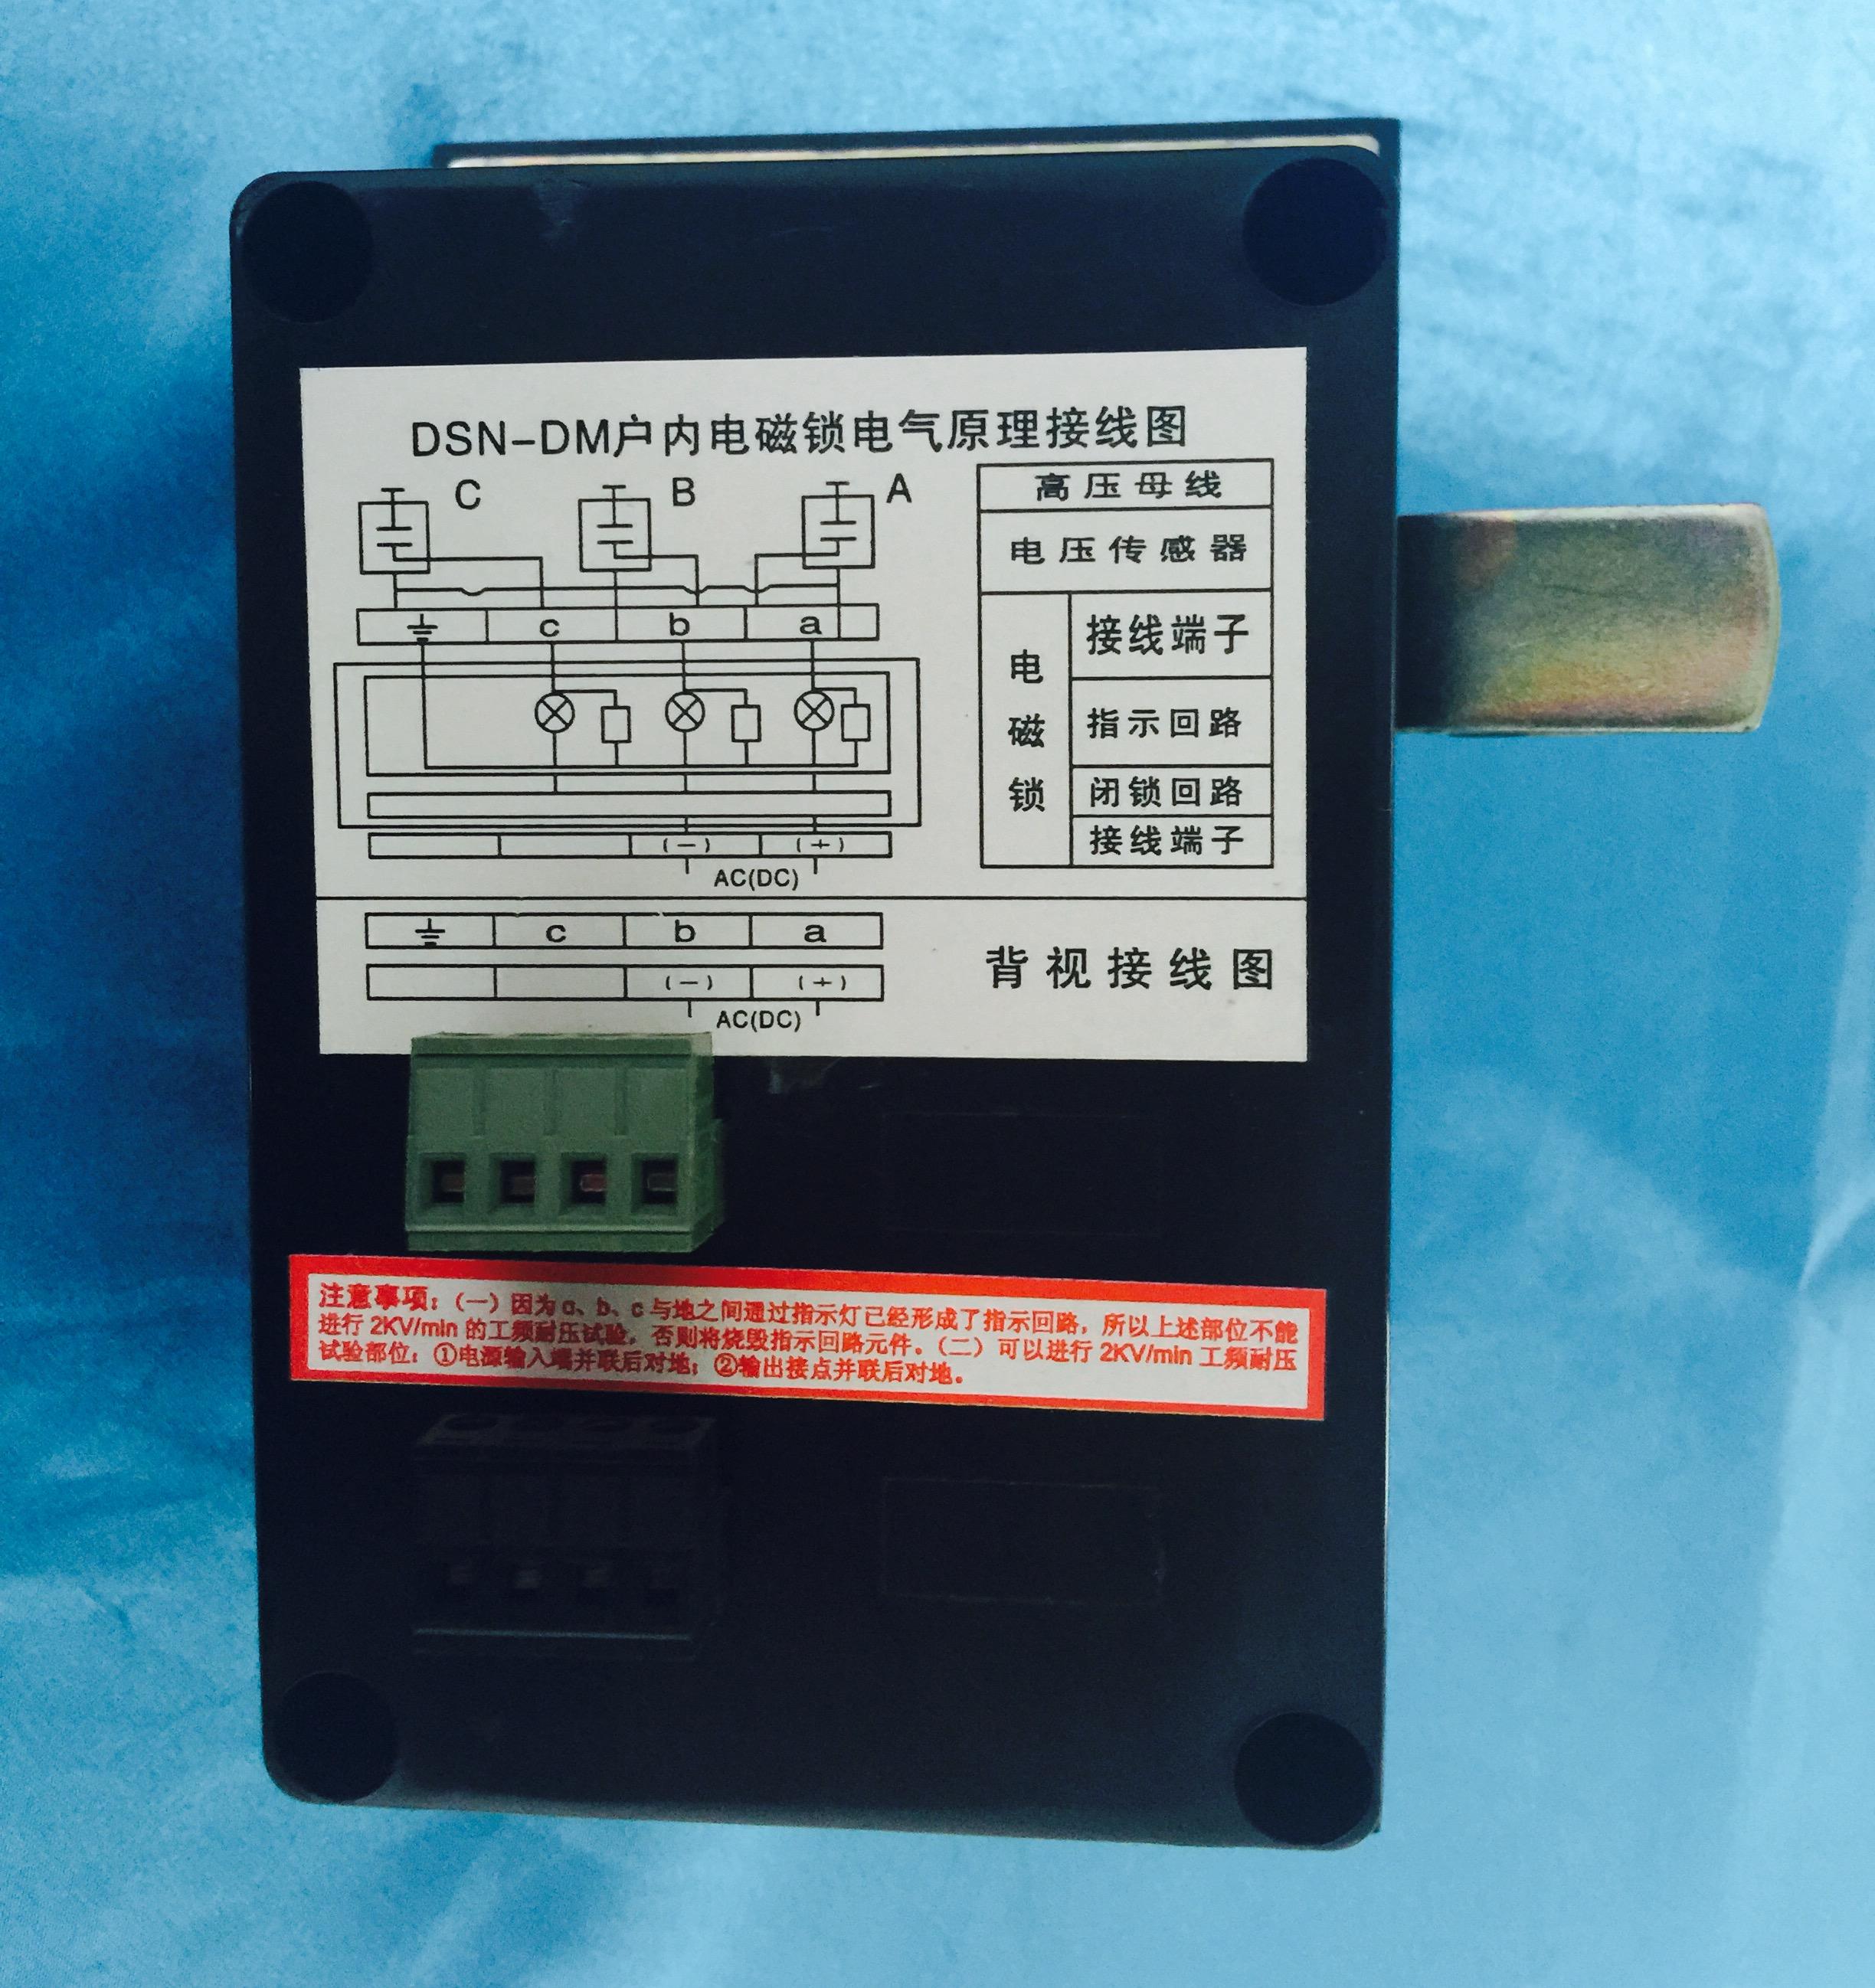 DSN-DM/Y（Z）户内程序刀闸电磁锁